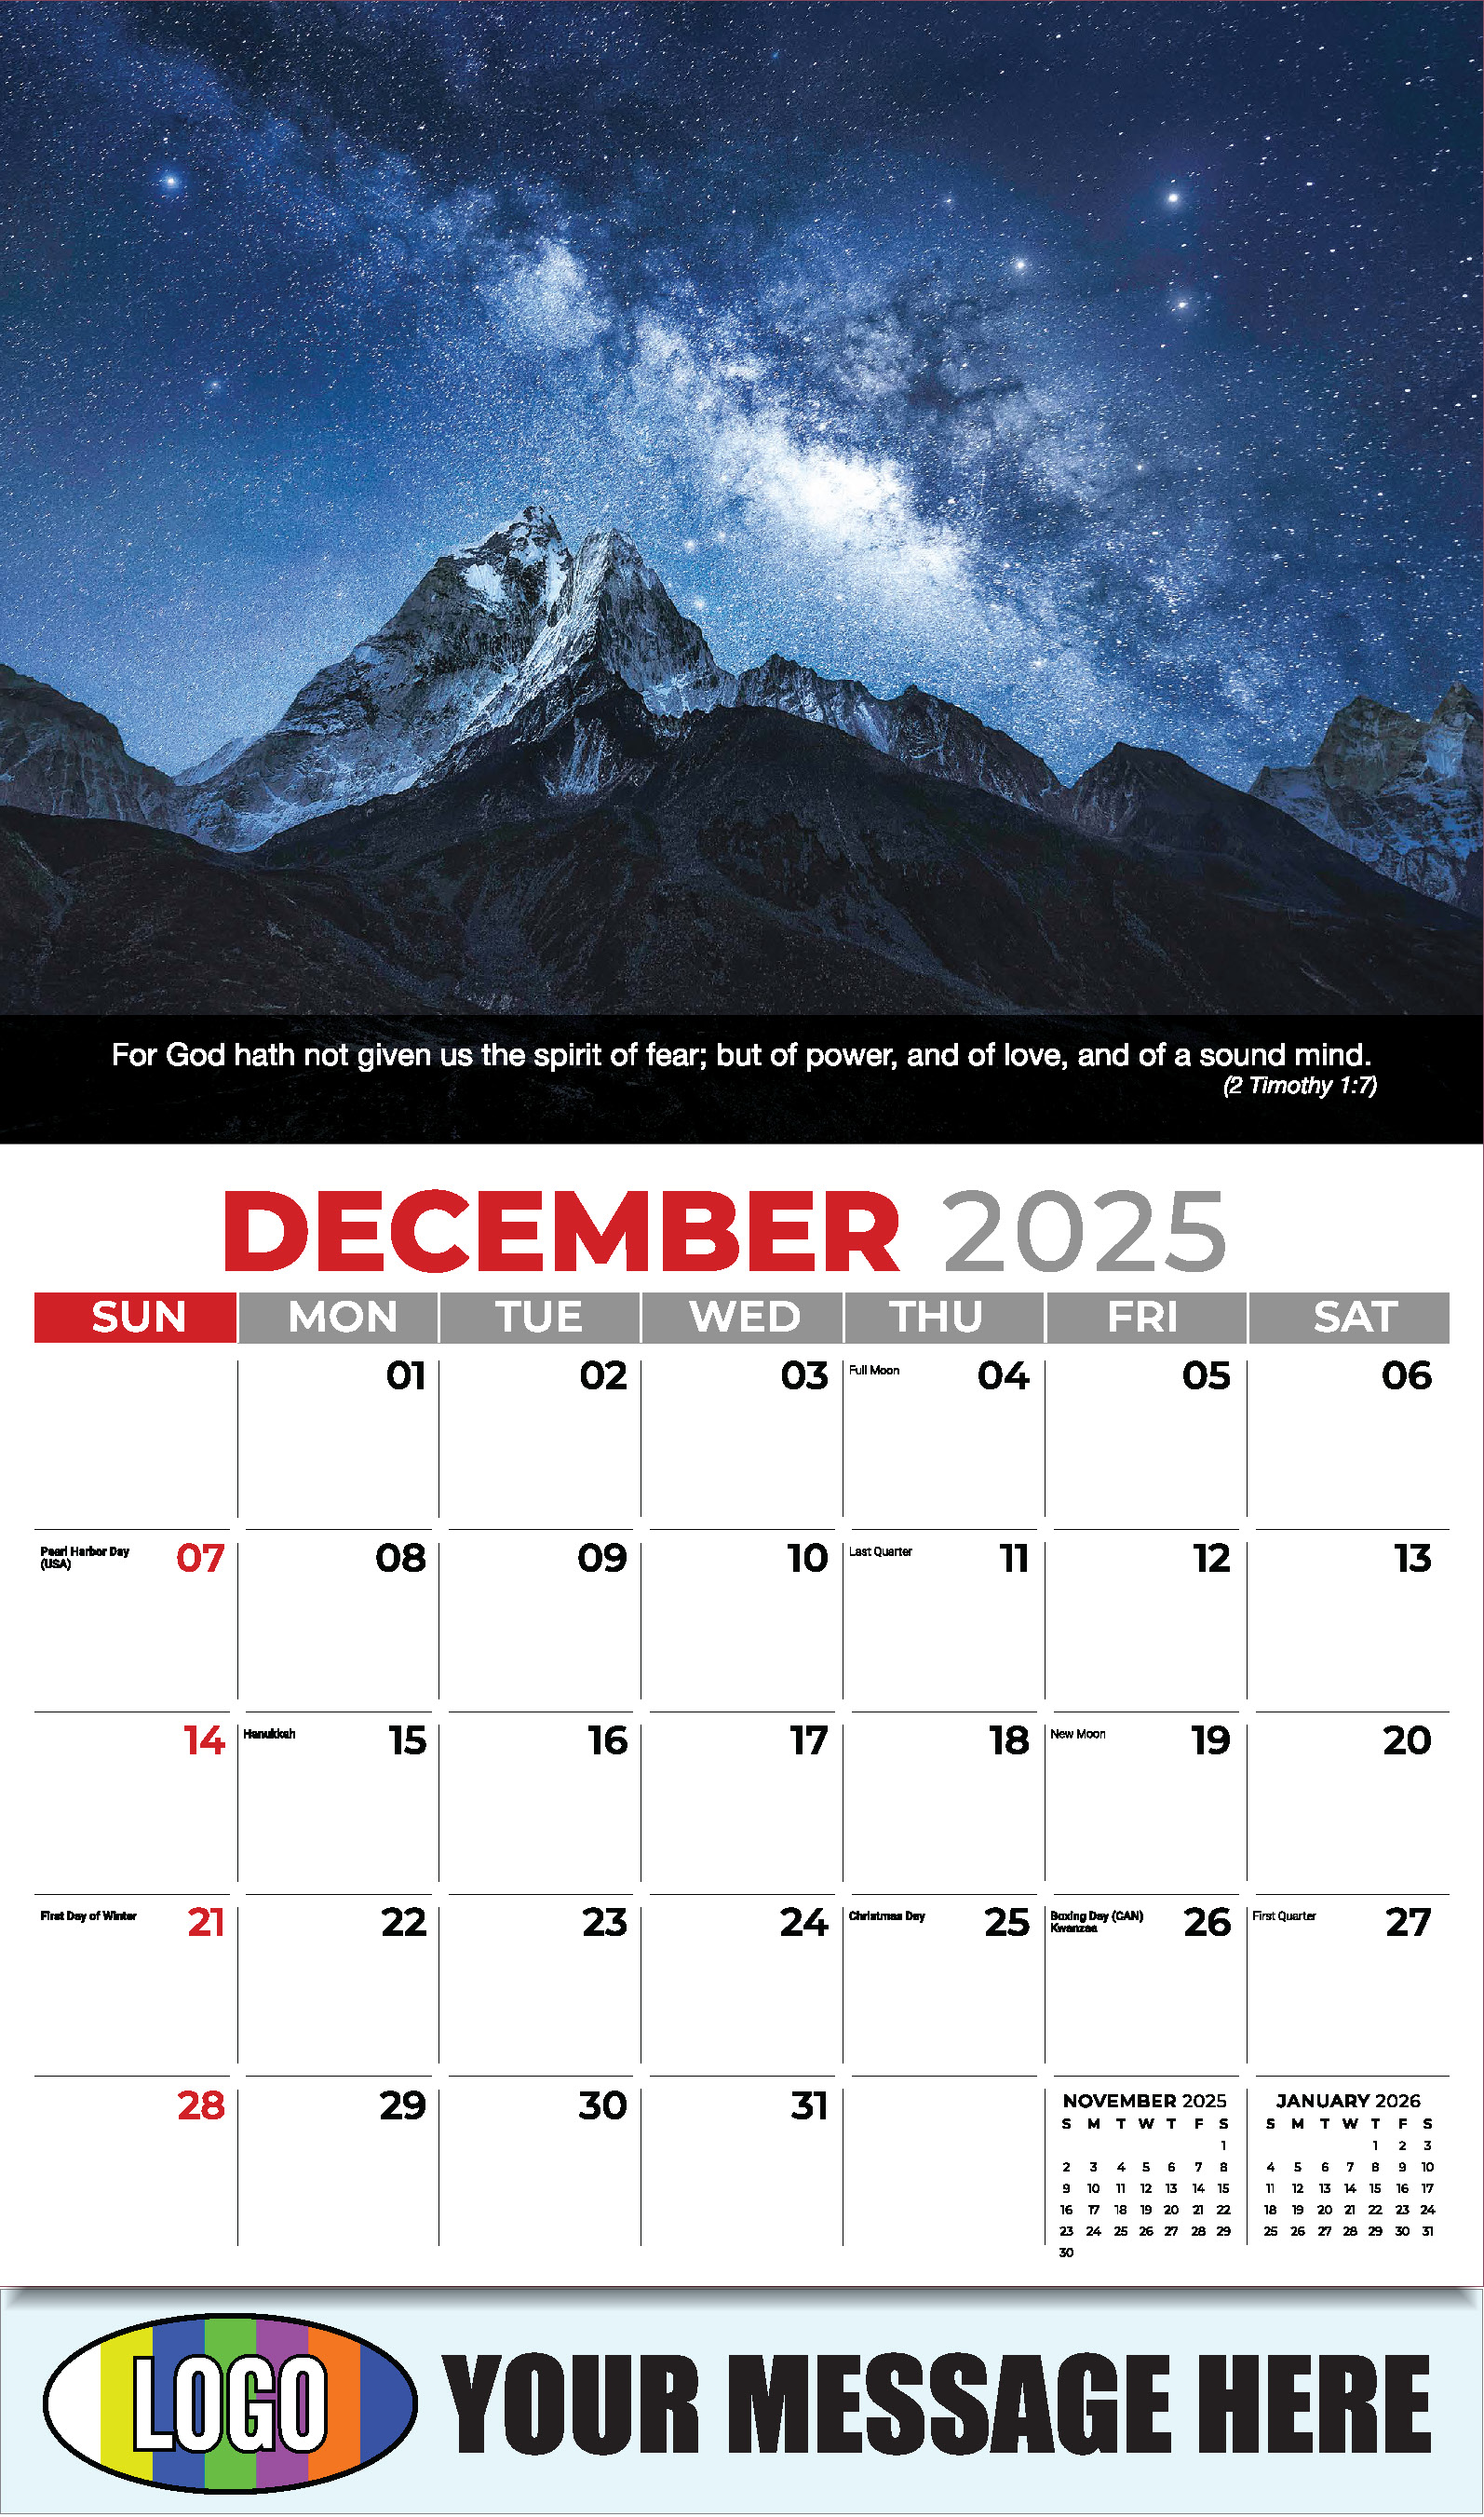 Faith Passages 2025 Christian Business Advertising Calendar - December